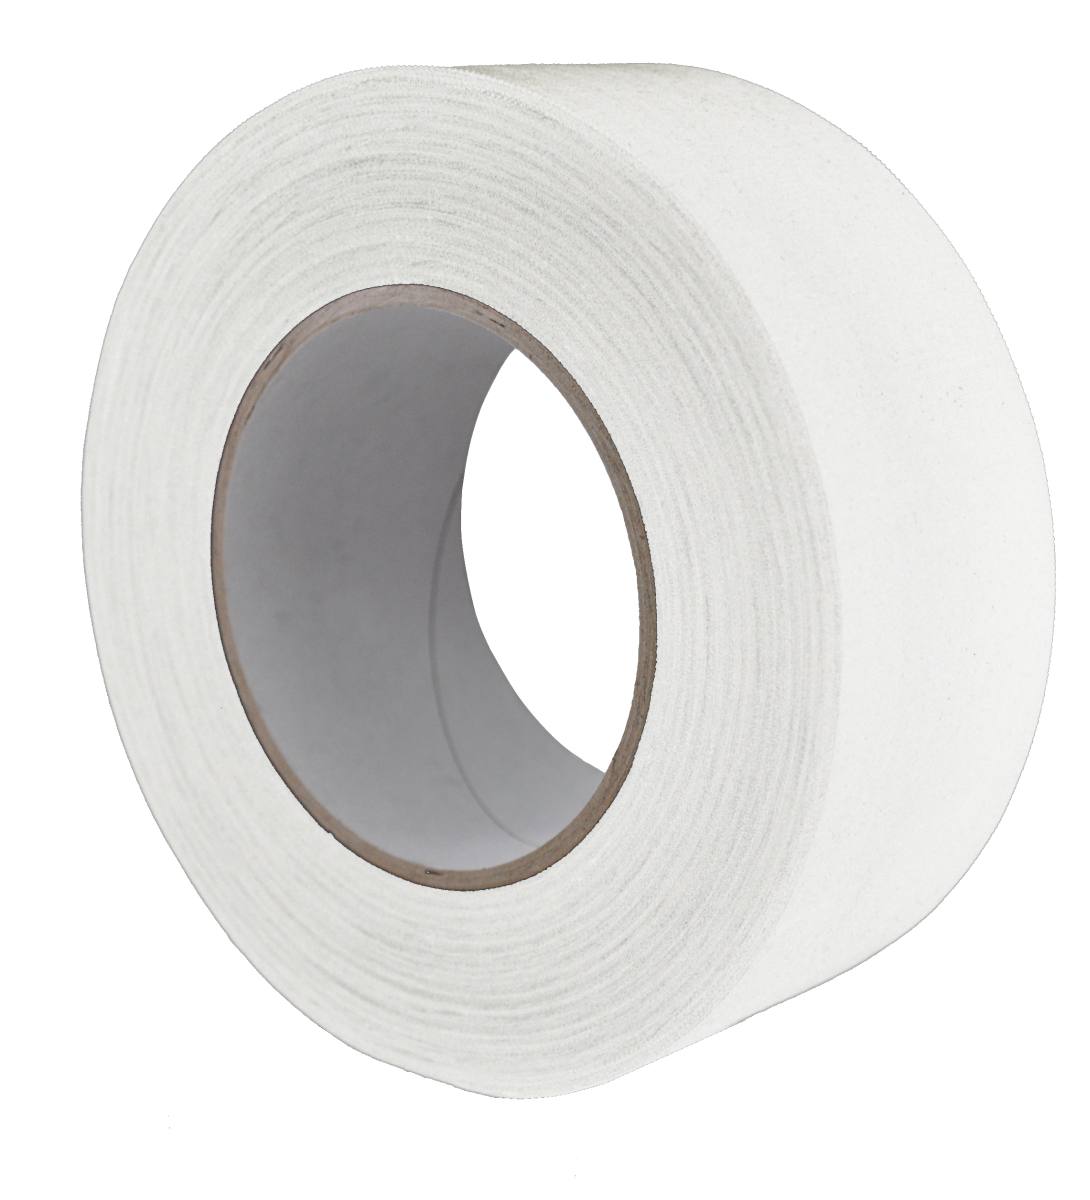 S-K-S 970 Raw fabric adhesive tape, 38 mm x 50 m, white, 0.240 mm